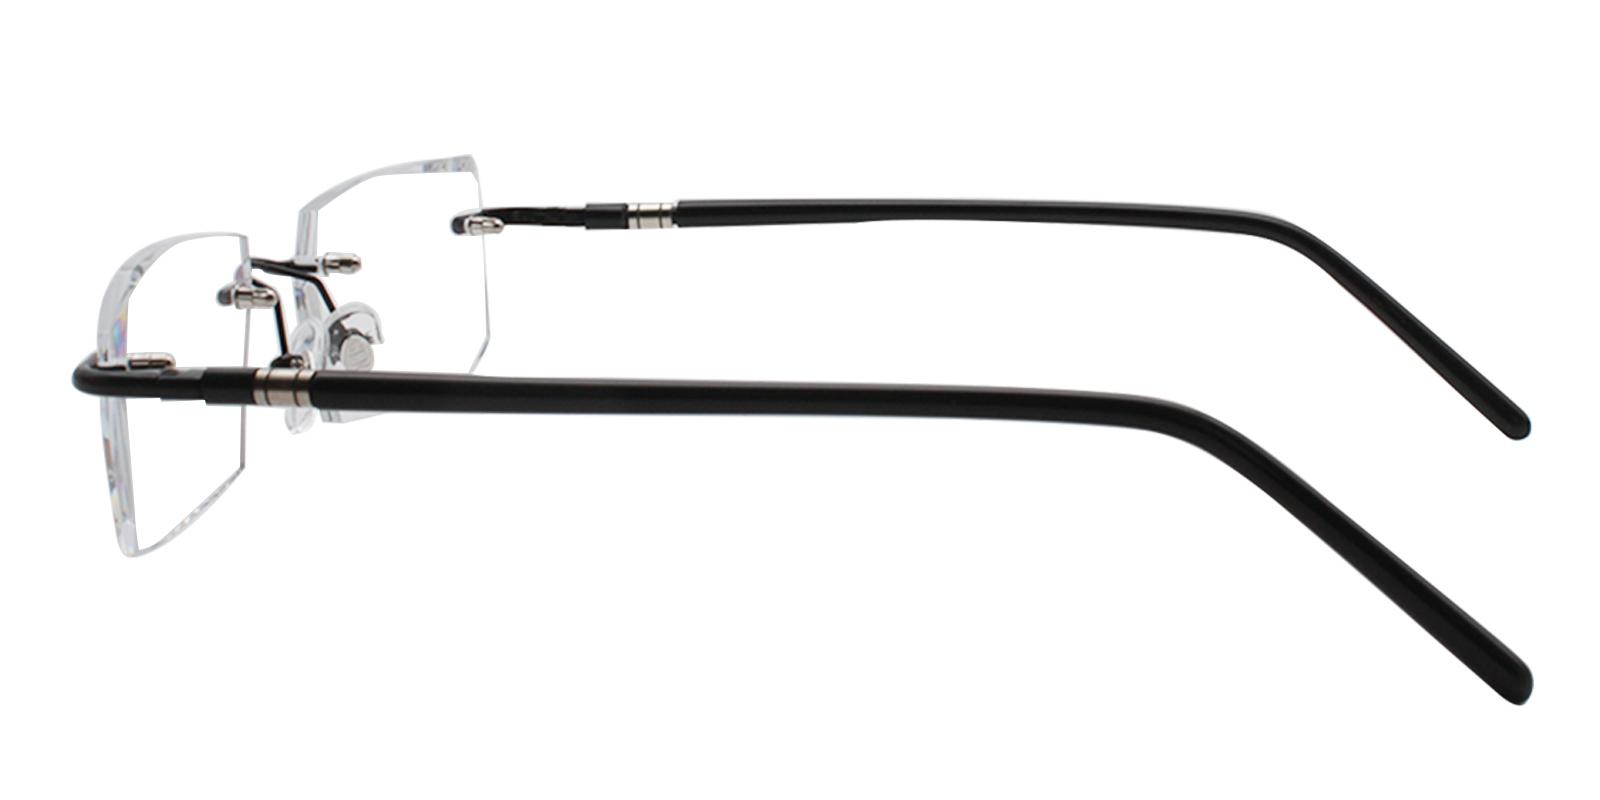 Asher Black Titanium NosePads , Eyeglasses Frames from ABBE Glasses